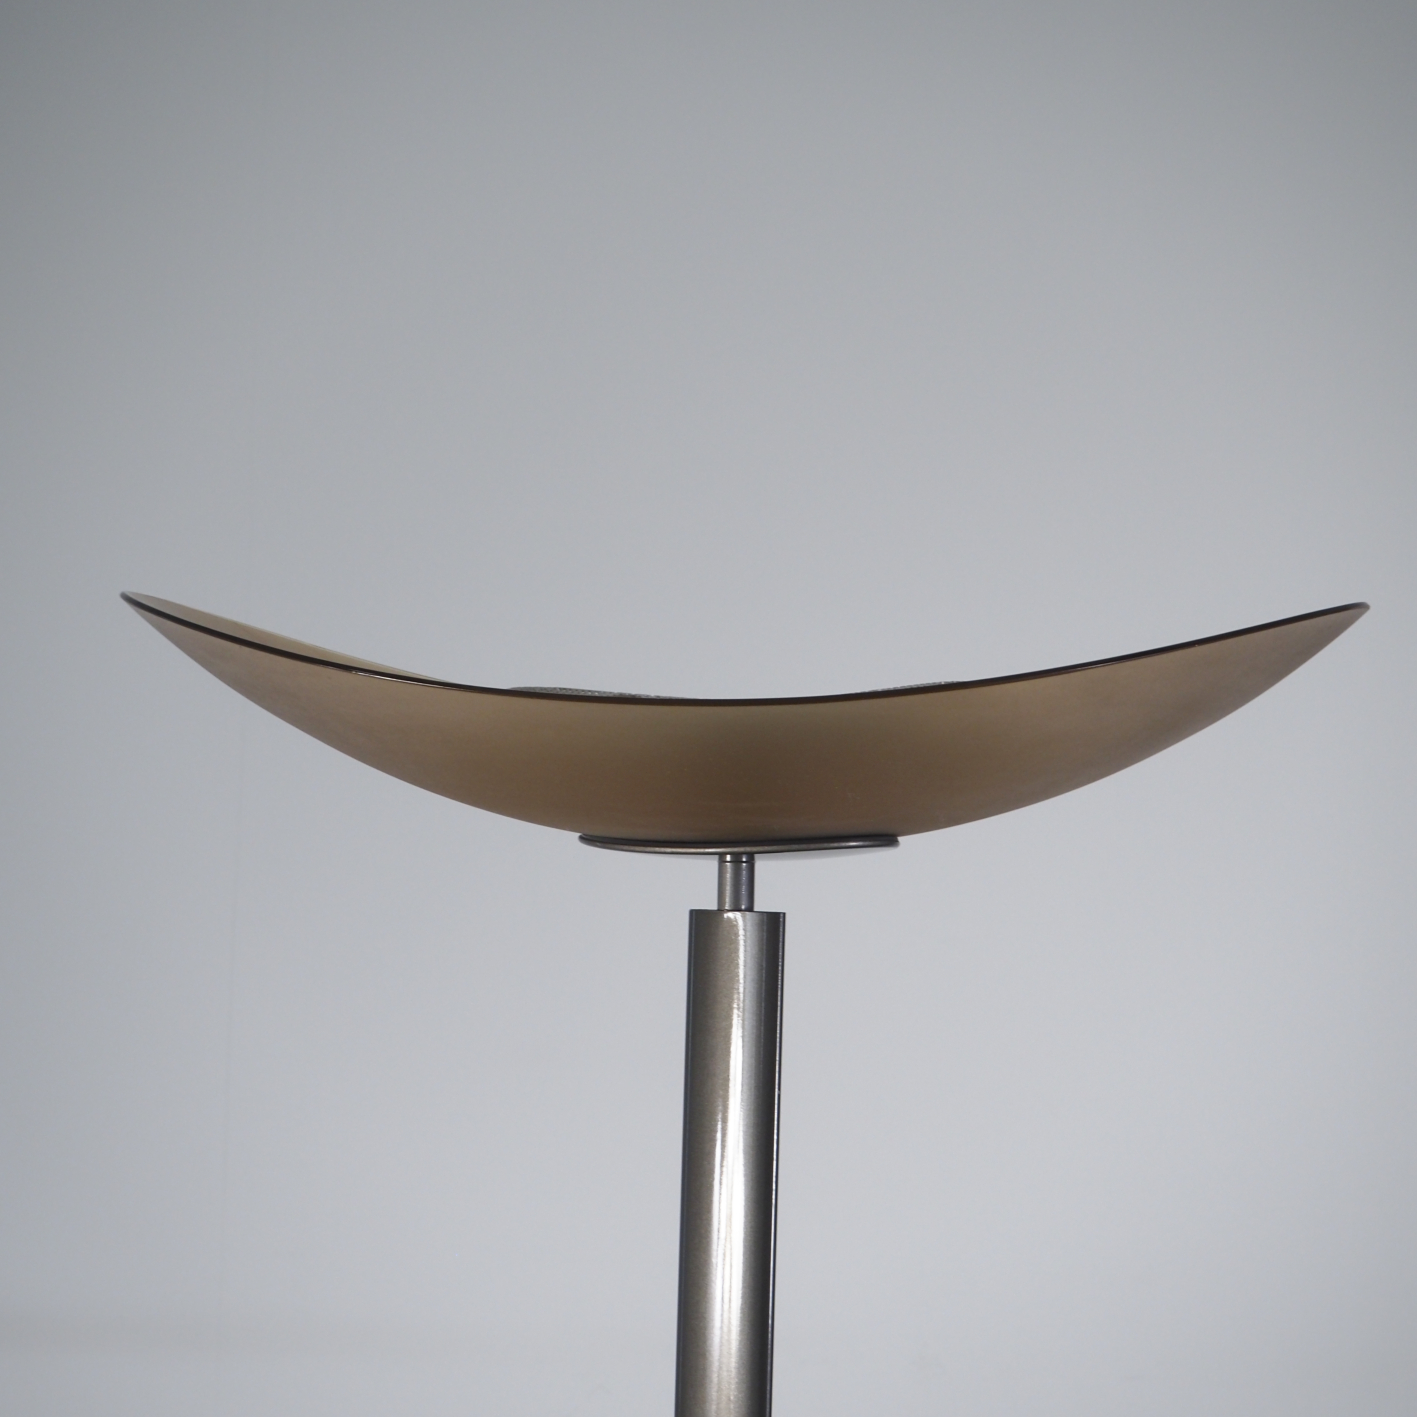 Floor lamp 'Tebe' by Ernesto Gismondi for Artemide (ca. 1980)